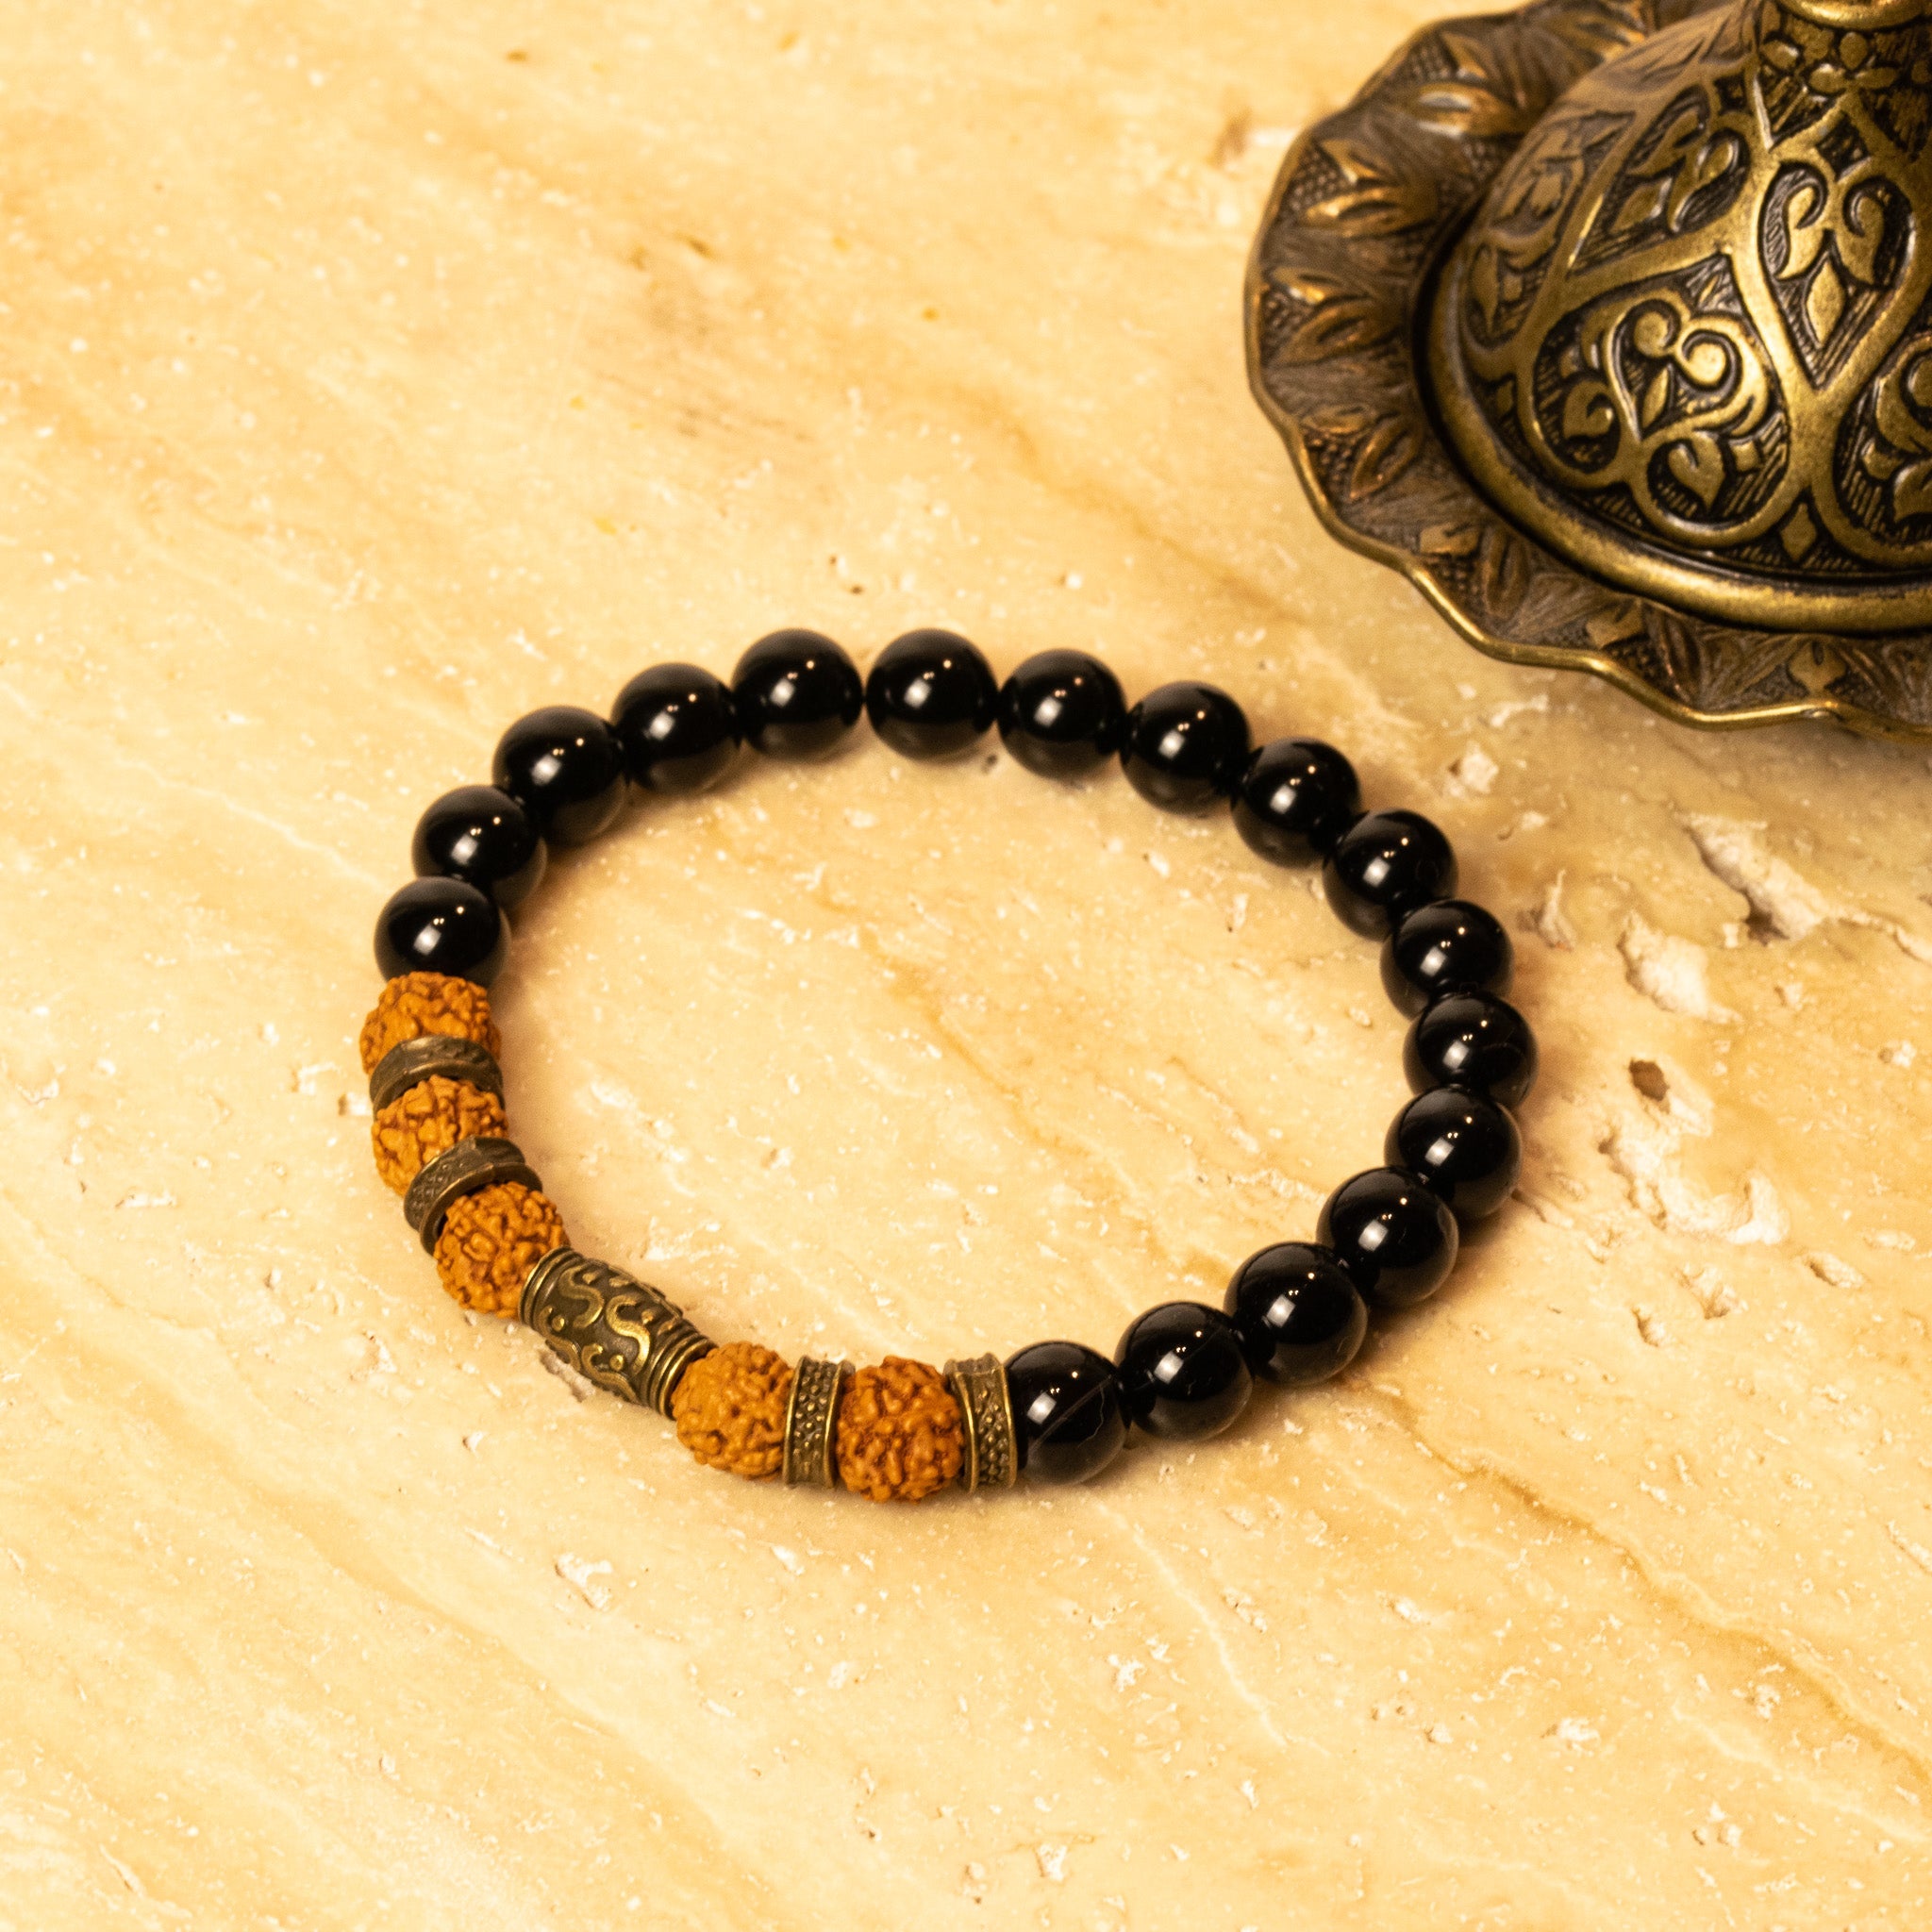 Rudraksh and Black Tourmaline bracelet for positivity